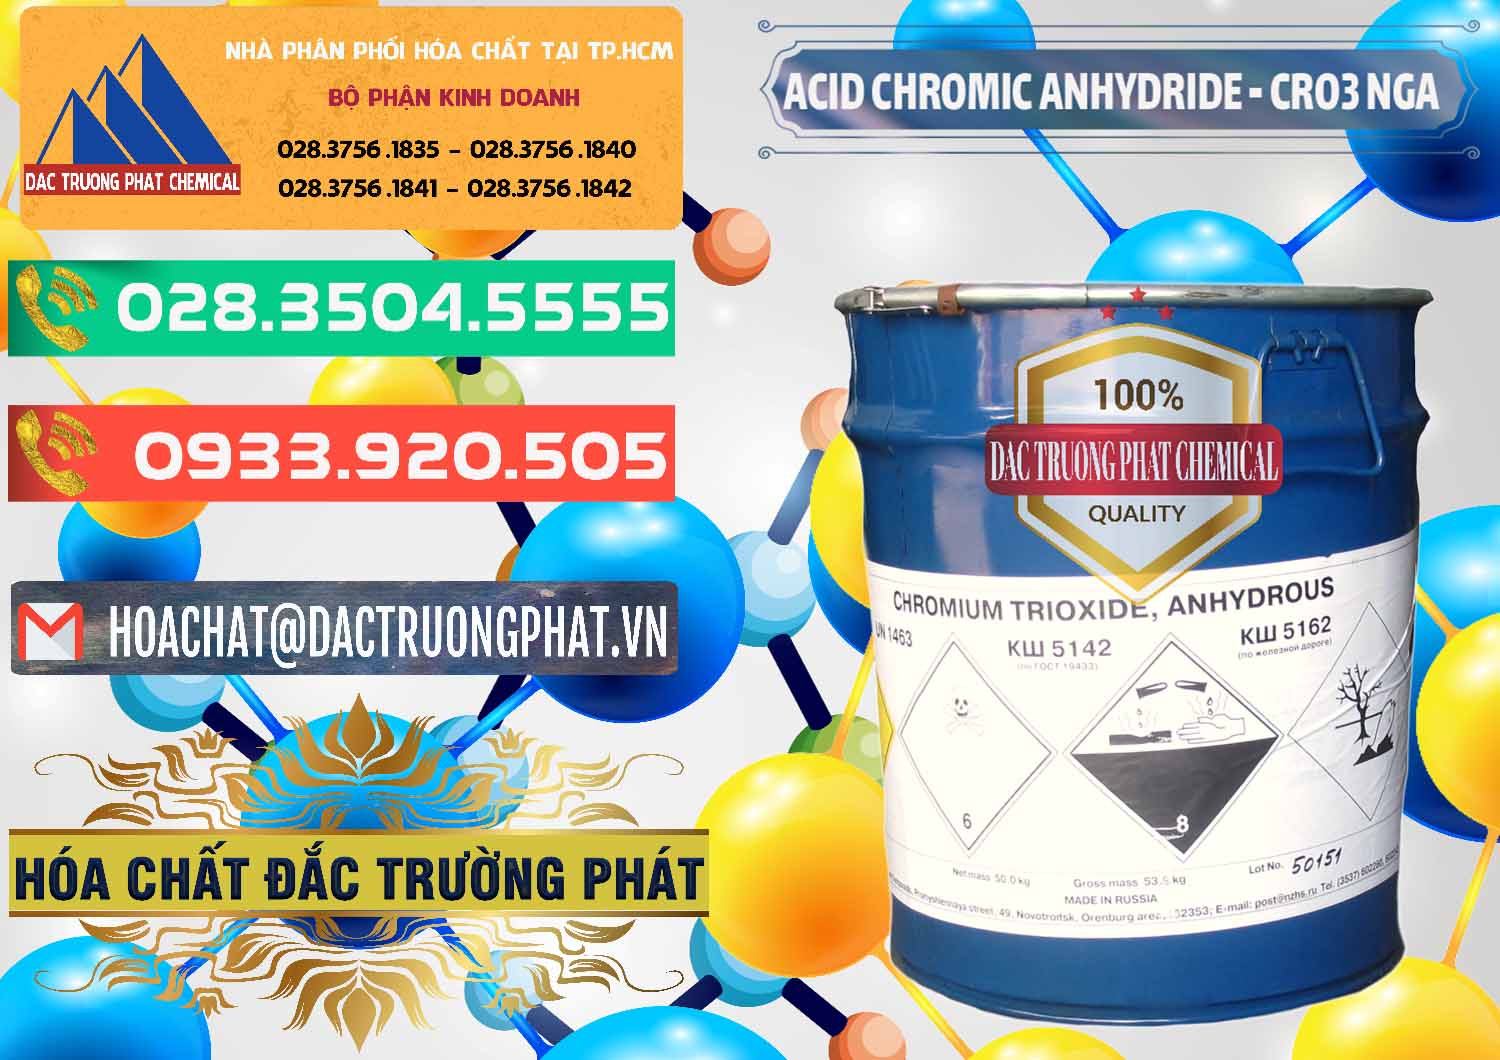 Công ty chuyên kinh doanh ( bán ) Acid Chromic Anhydride - Cromic CRO3 Nga Russia - 0006 - Đơn vị chuyên cung cấp và nhập khẩu hóa chất tại TP.HCM - congtyhoachat.com.vn